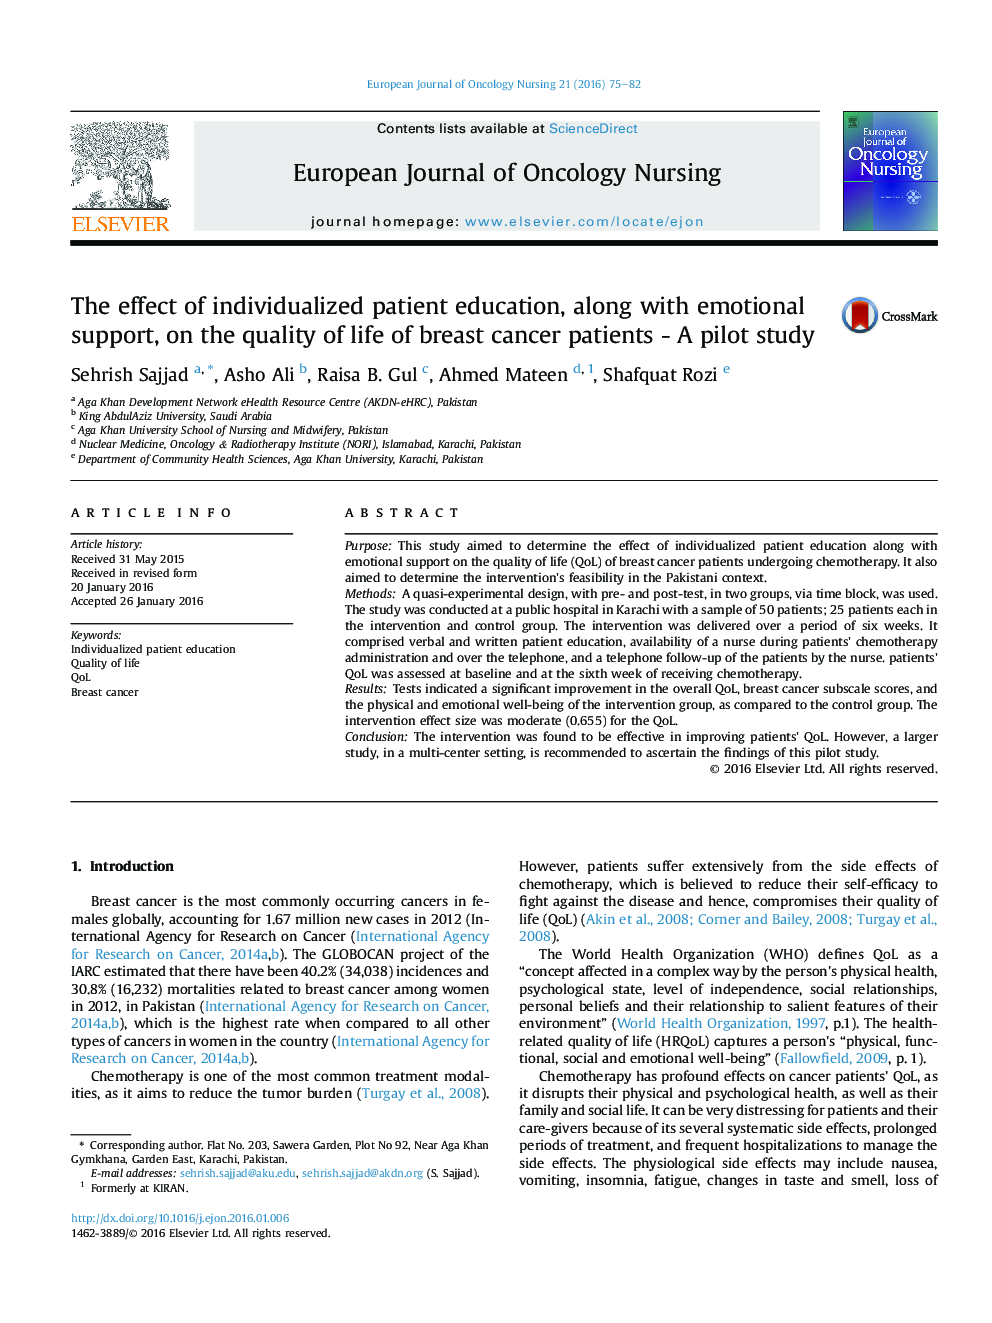 تأثیر آموزش بیمار فردی همراه با حمایت عاطفی بر کیفیت زندگی بیماران مبتلا به سرطان پستان - یک مطالعه آزمایشی 